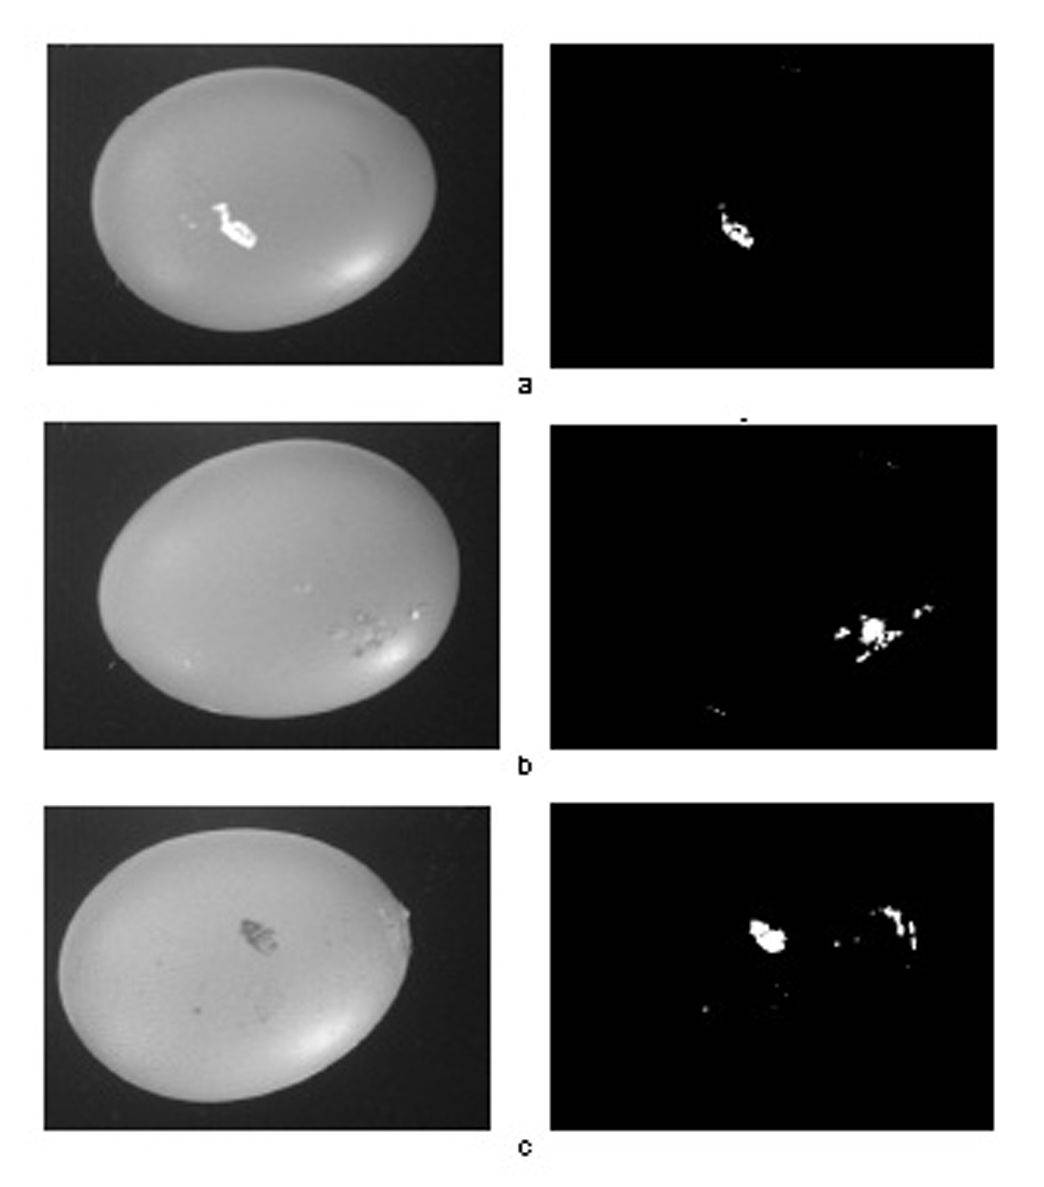 Ejemplos de imágenes monocromáticas de cascaras de huevos defectuosos (izquierda) y de las mismas imágenes segmentadas (derecha) donde es posible apreciar los defectos. Fuente: Loredana Lunadei